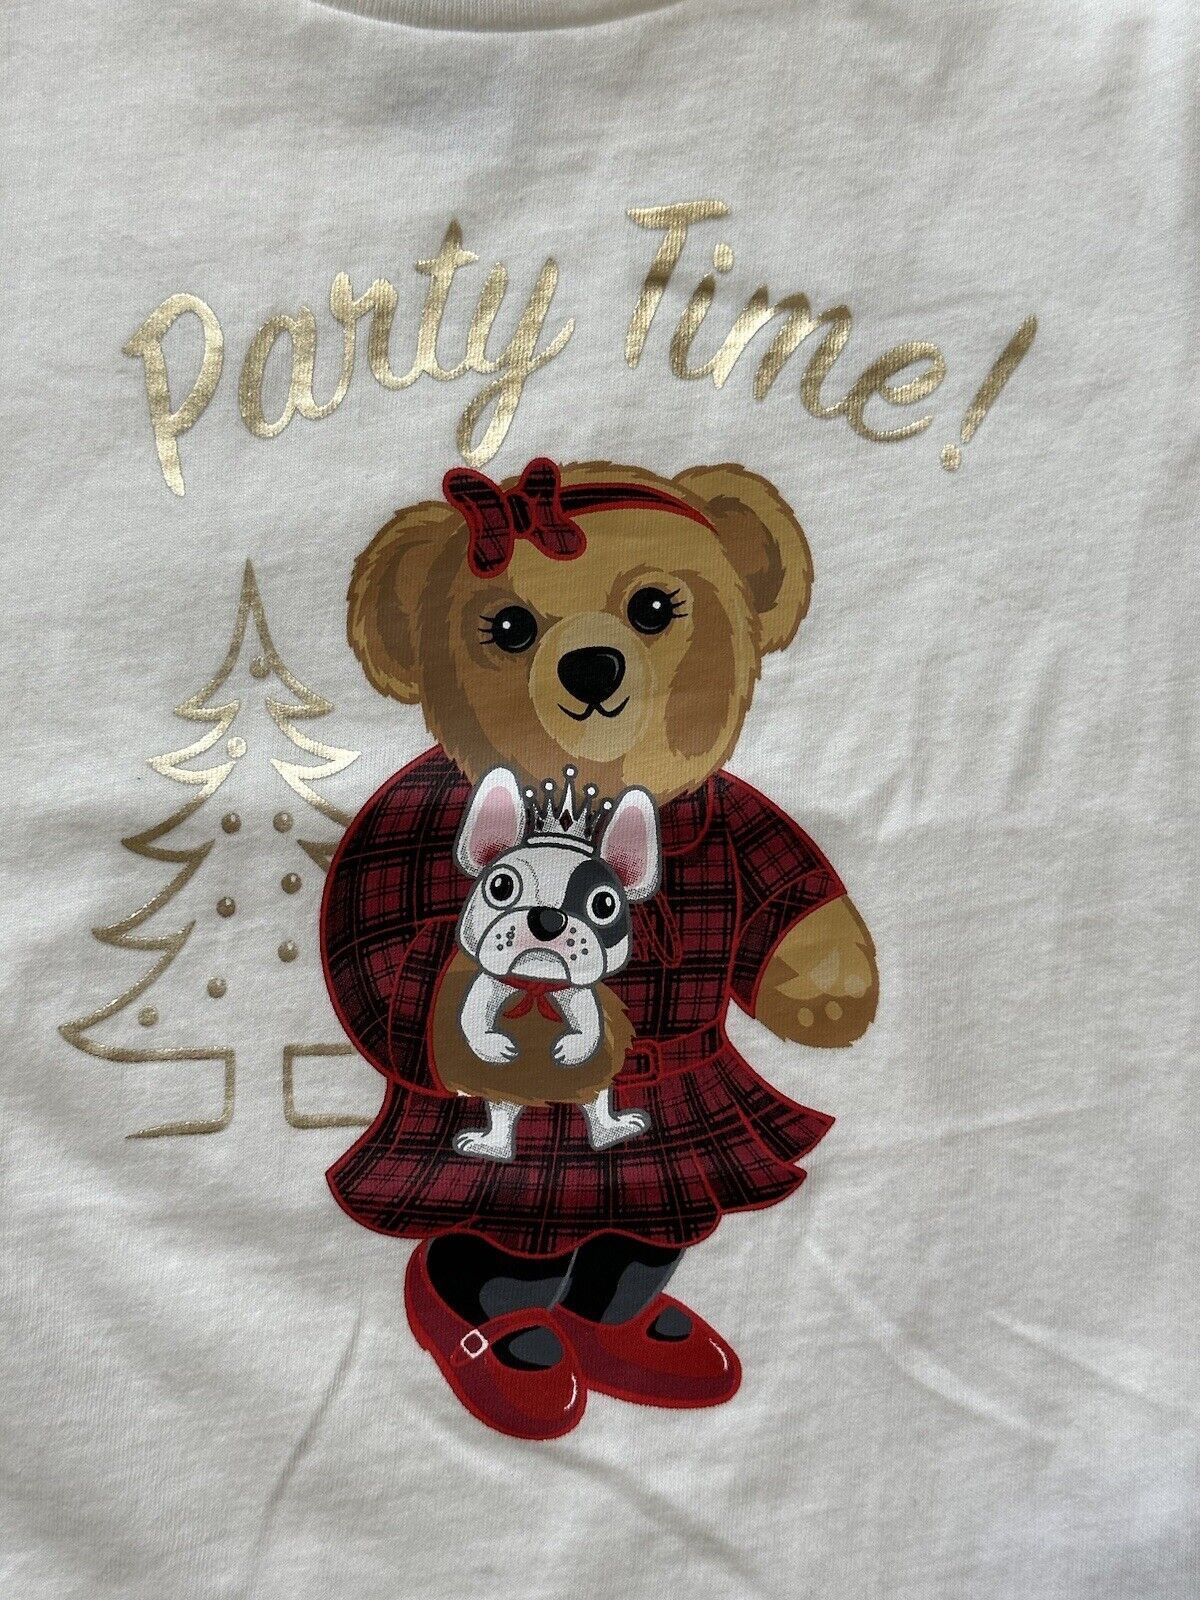 Белая хлопковая футболка NWT Polo Ralph Lauren Girl's Bear 3T 